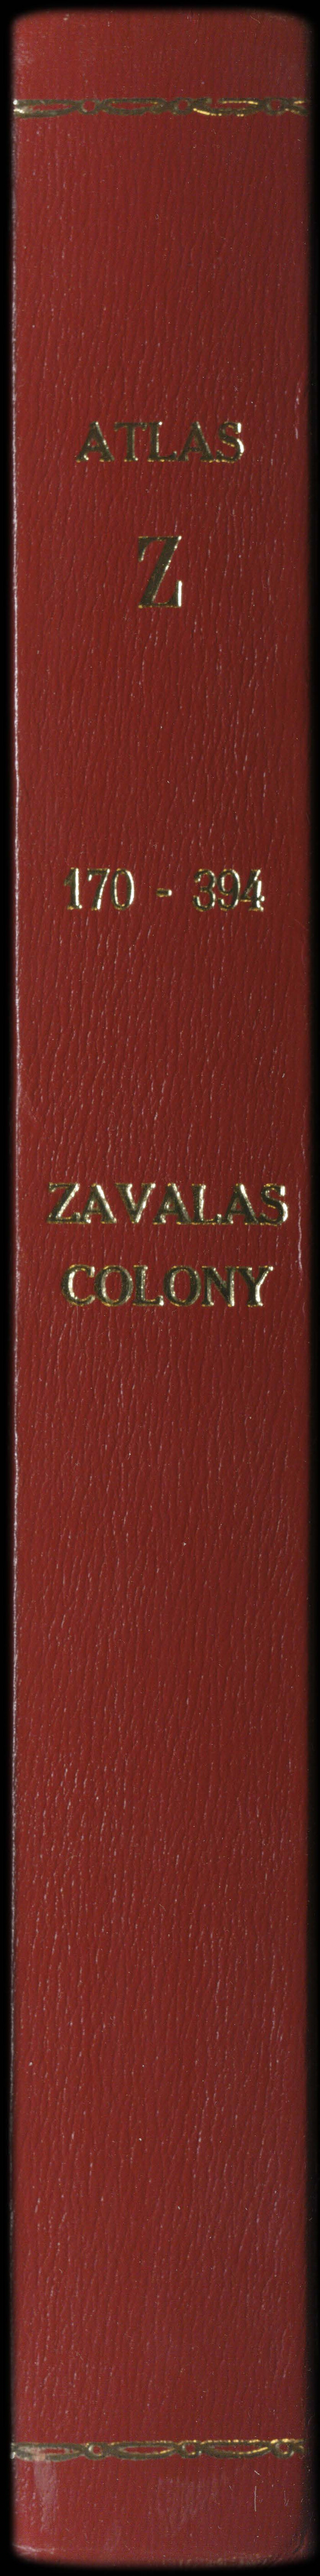 Atlas Z, 170-394: Zavala's Colony